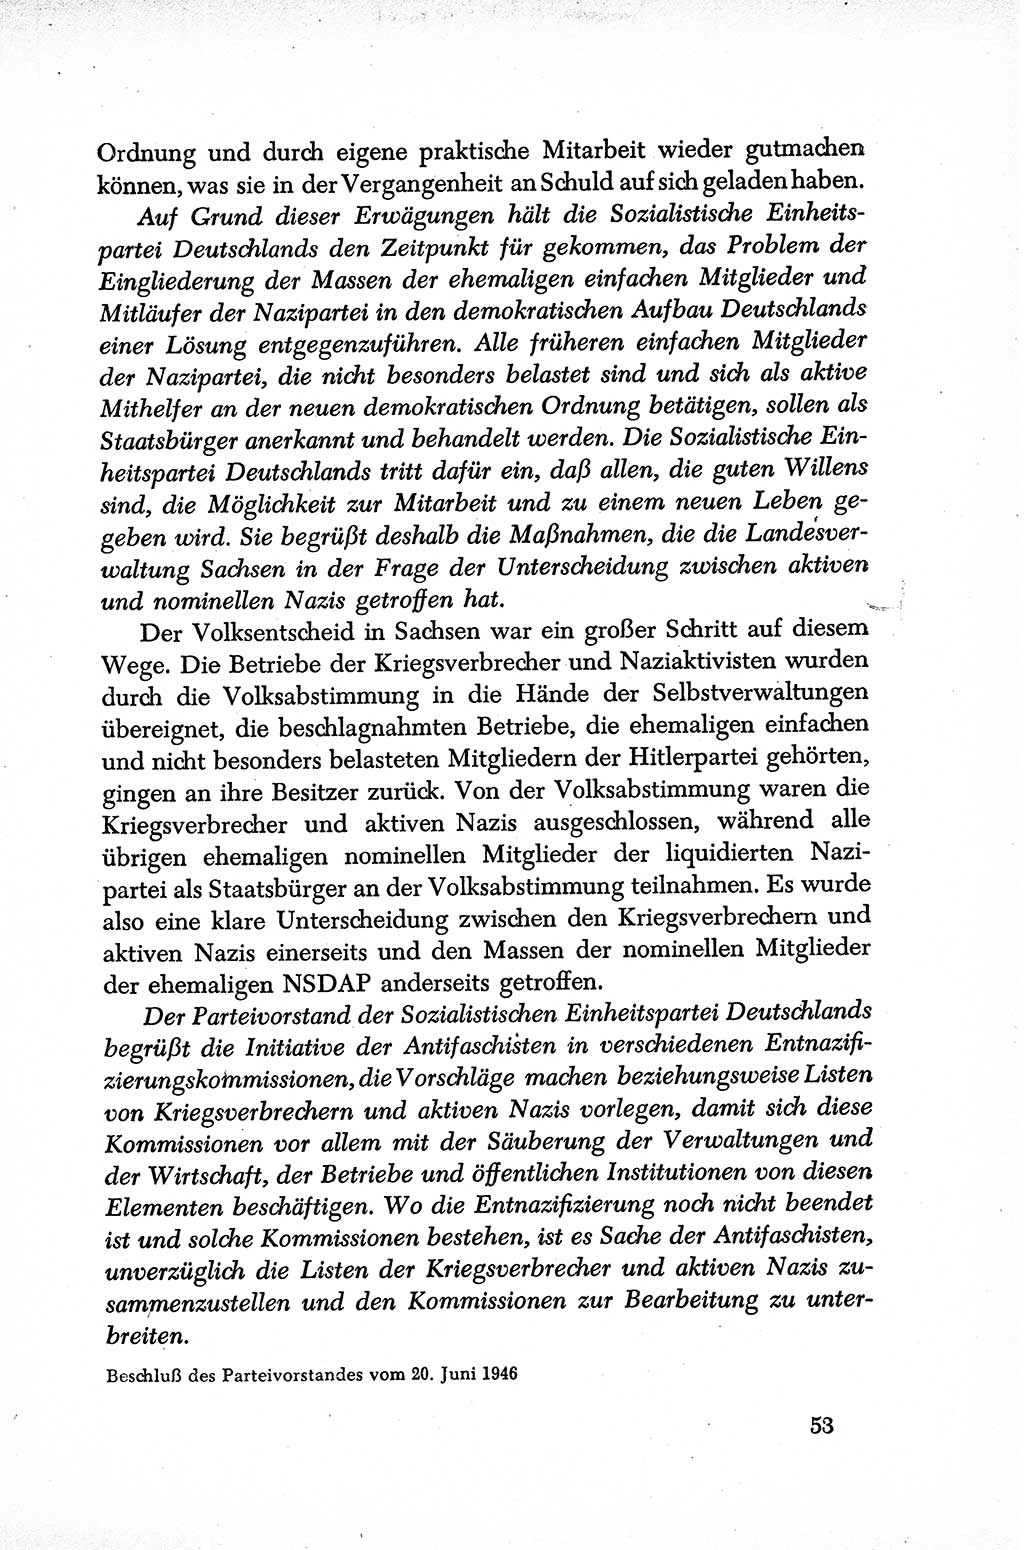 Dokumente der Sozialistischen Einheitspartei Deutschlands (SED) [Sowjetische Besatzungszone (SBZ) Deutschlands] 1946-1948, Seite 53 (Dok. SED SBZ Dtl. 1946-1948, S. 53)